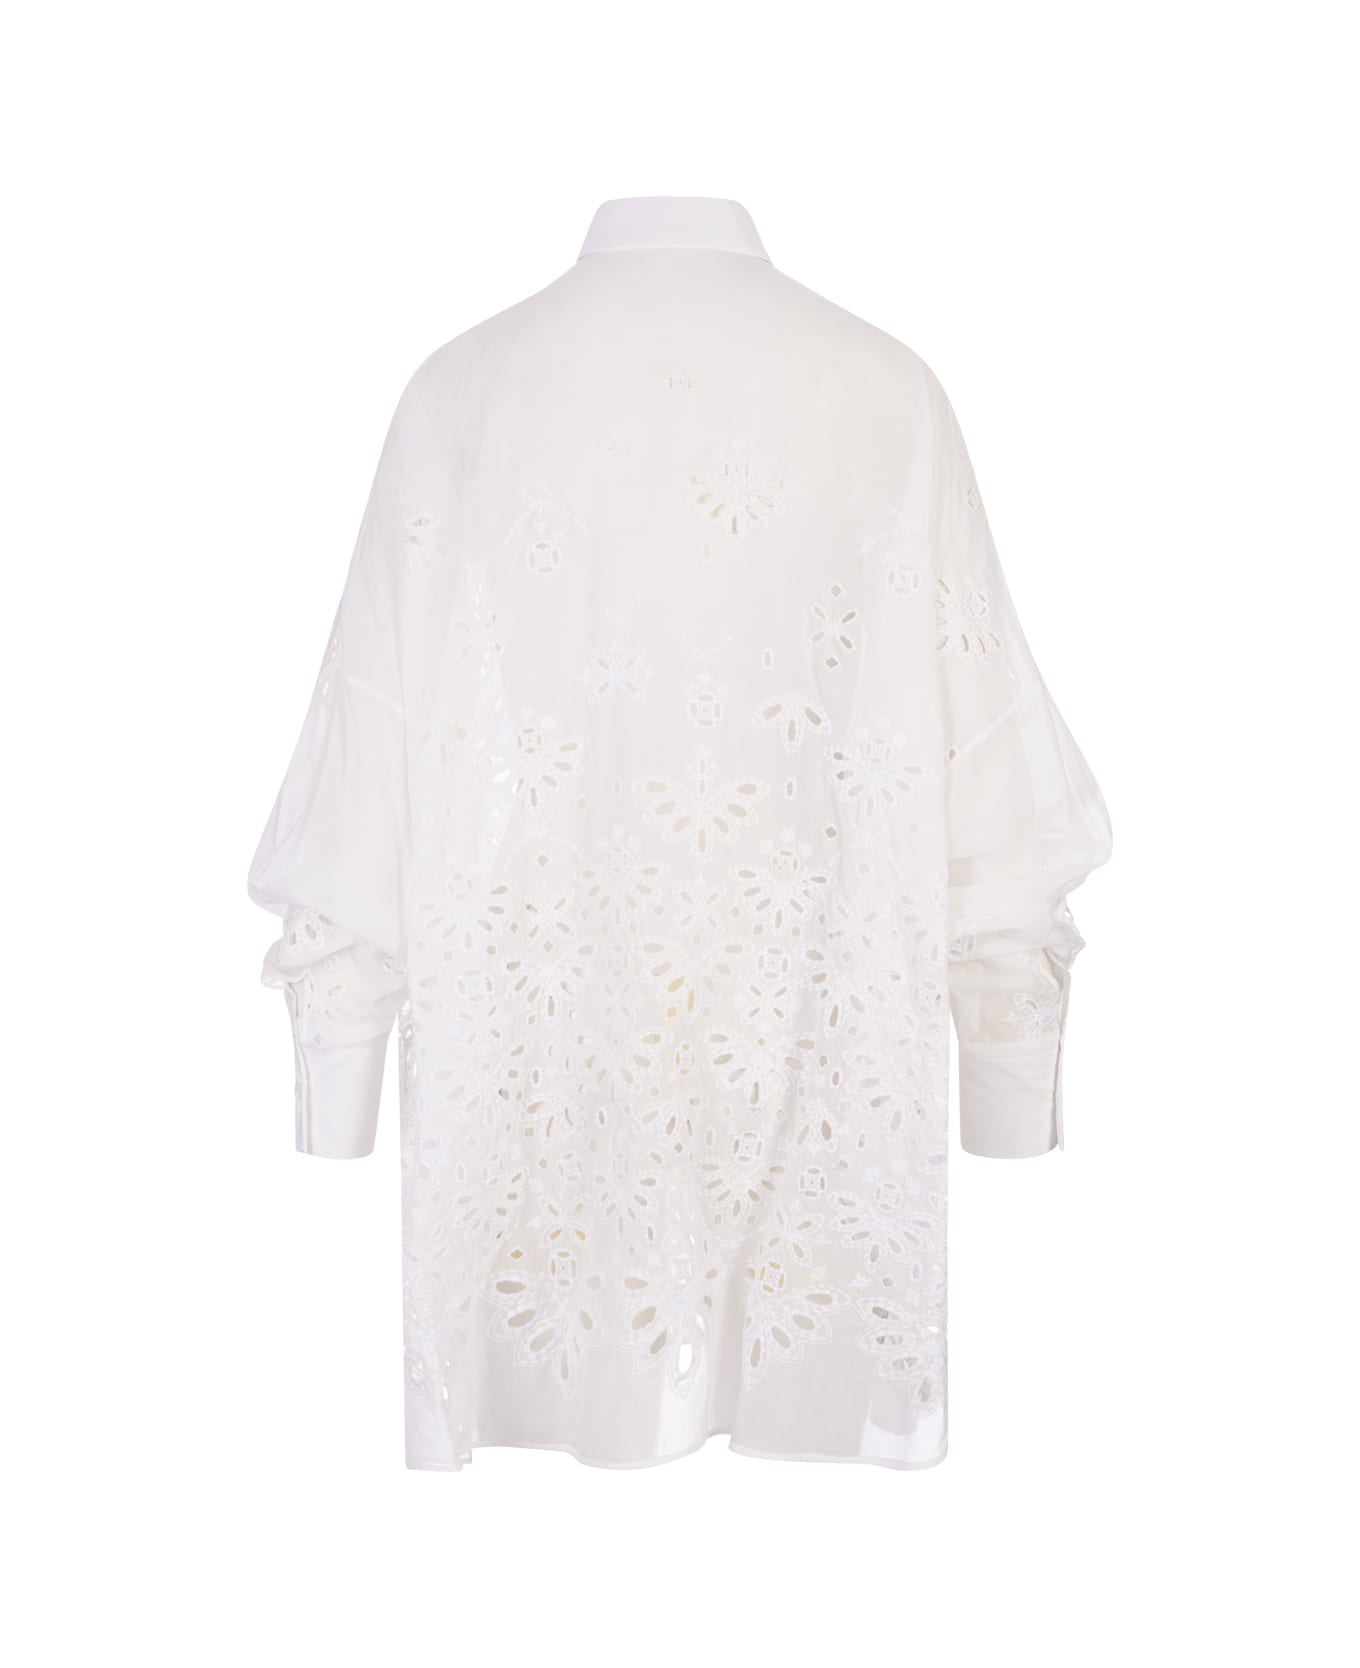 Ermanno Scervino White Over Shirt With Sangallo Lace - White シャツ